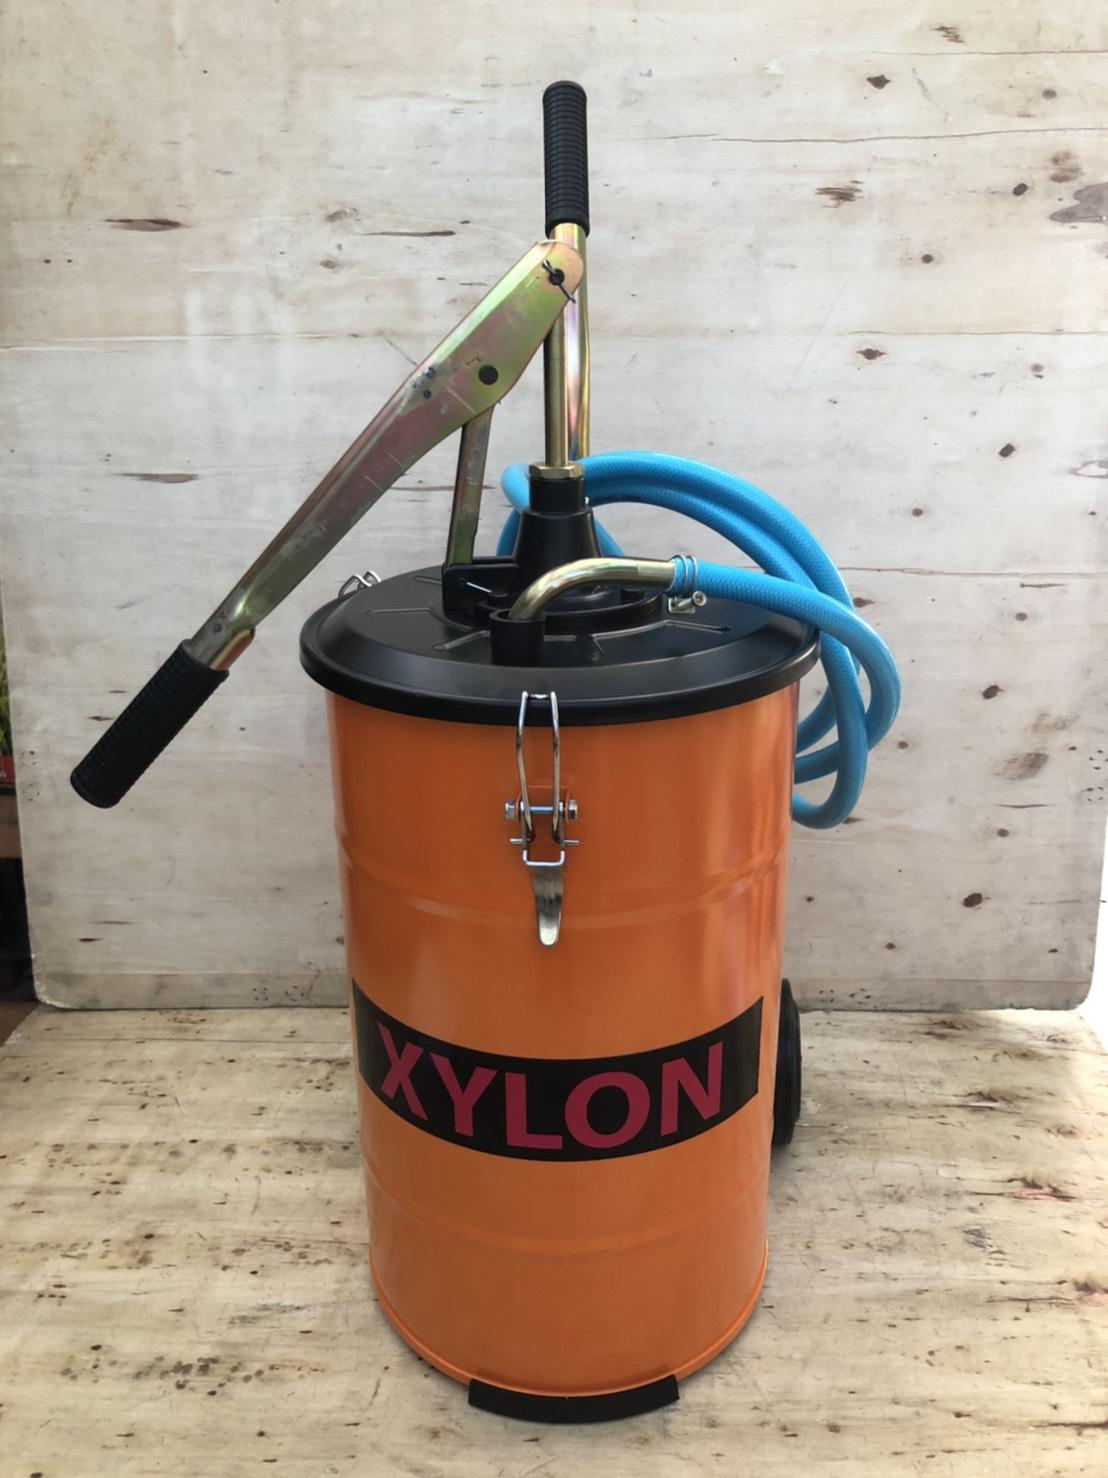 ถังเติมน้ำมันเกียร์ แบบมือโยก ขนาด 25 ลิตร Hand Operated Oil Pump ยี่ห้อ XYLON รุ่น XY-70A